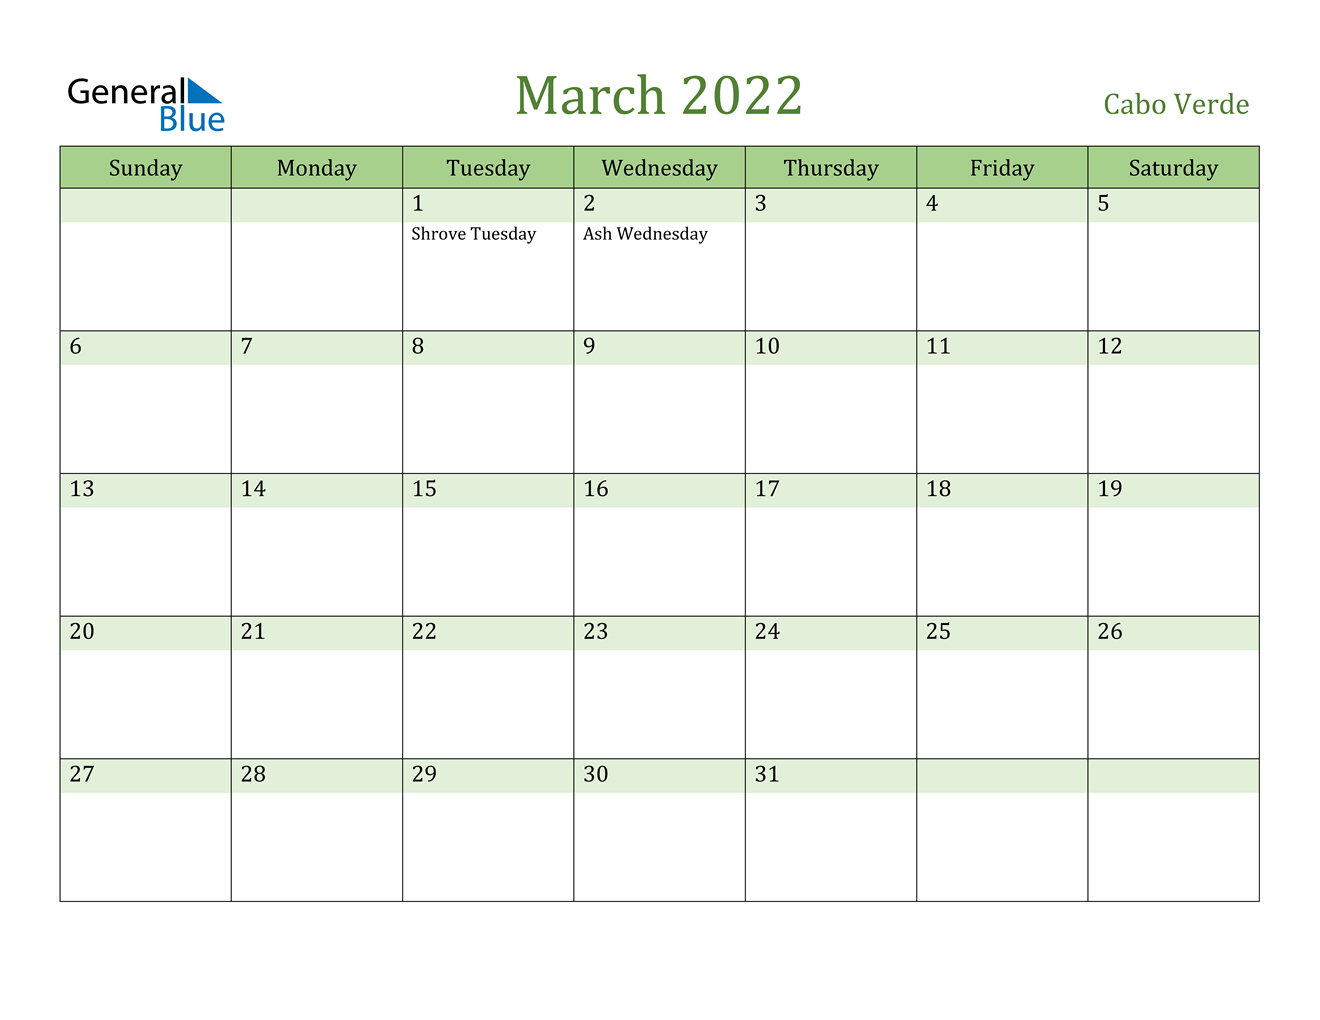 March 2022 Calendar - Cabo Verde